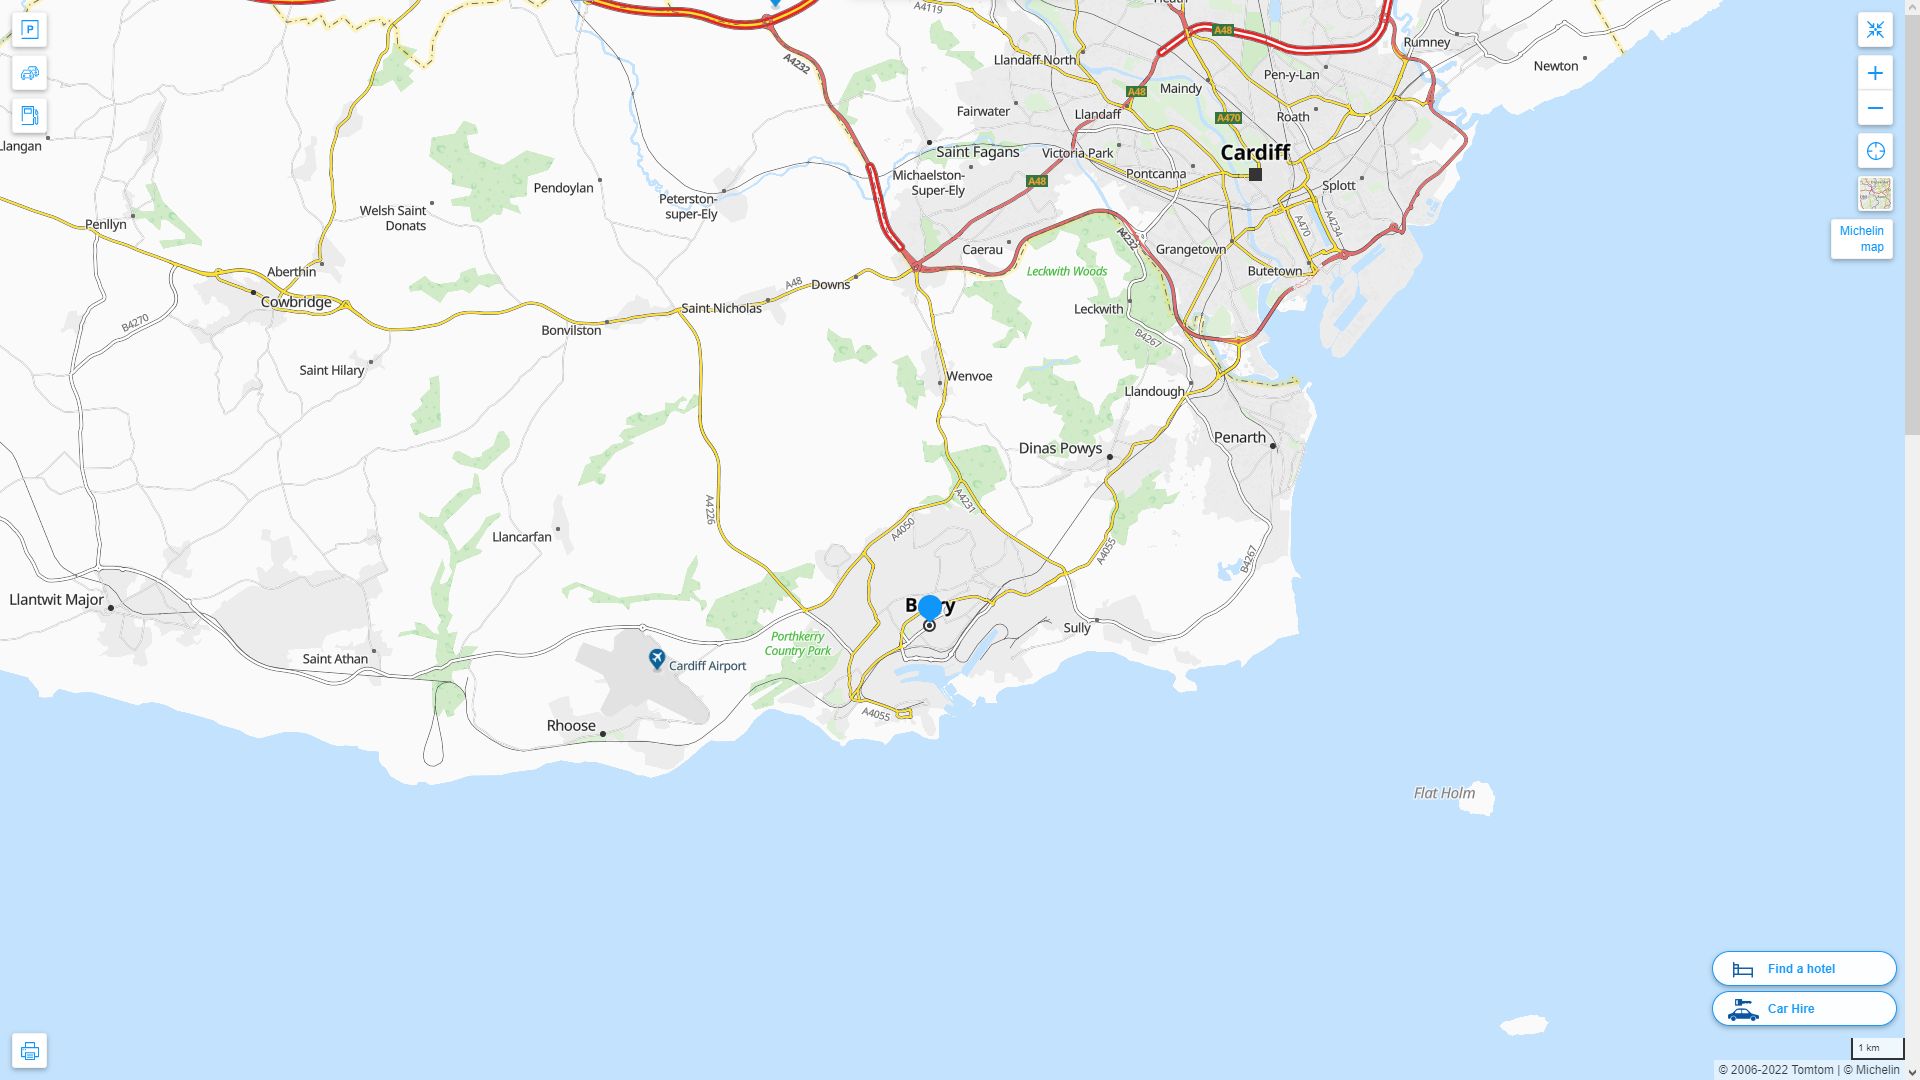 Barry Royaume Uni Autoroute et carte routiere